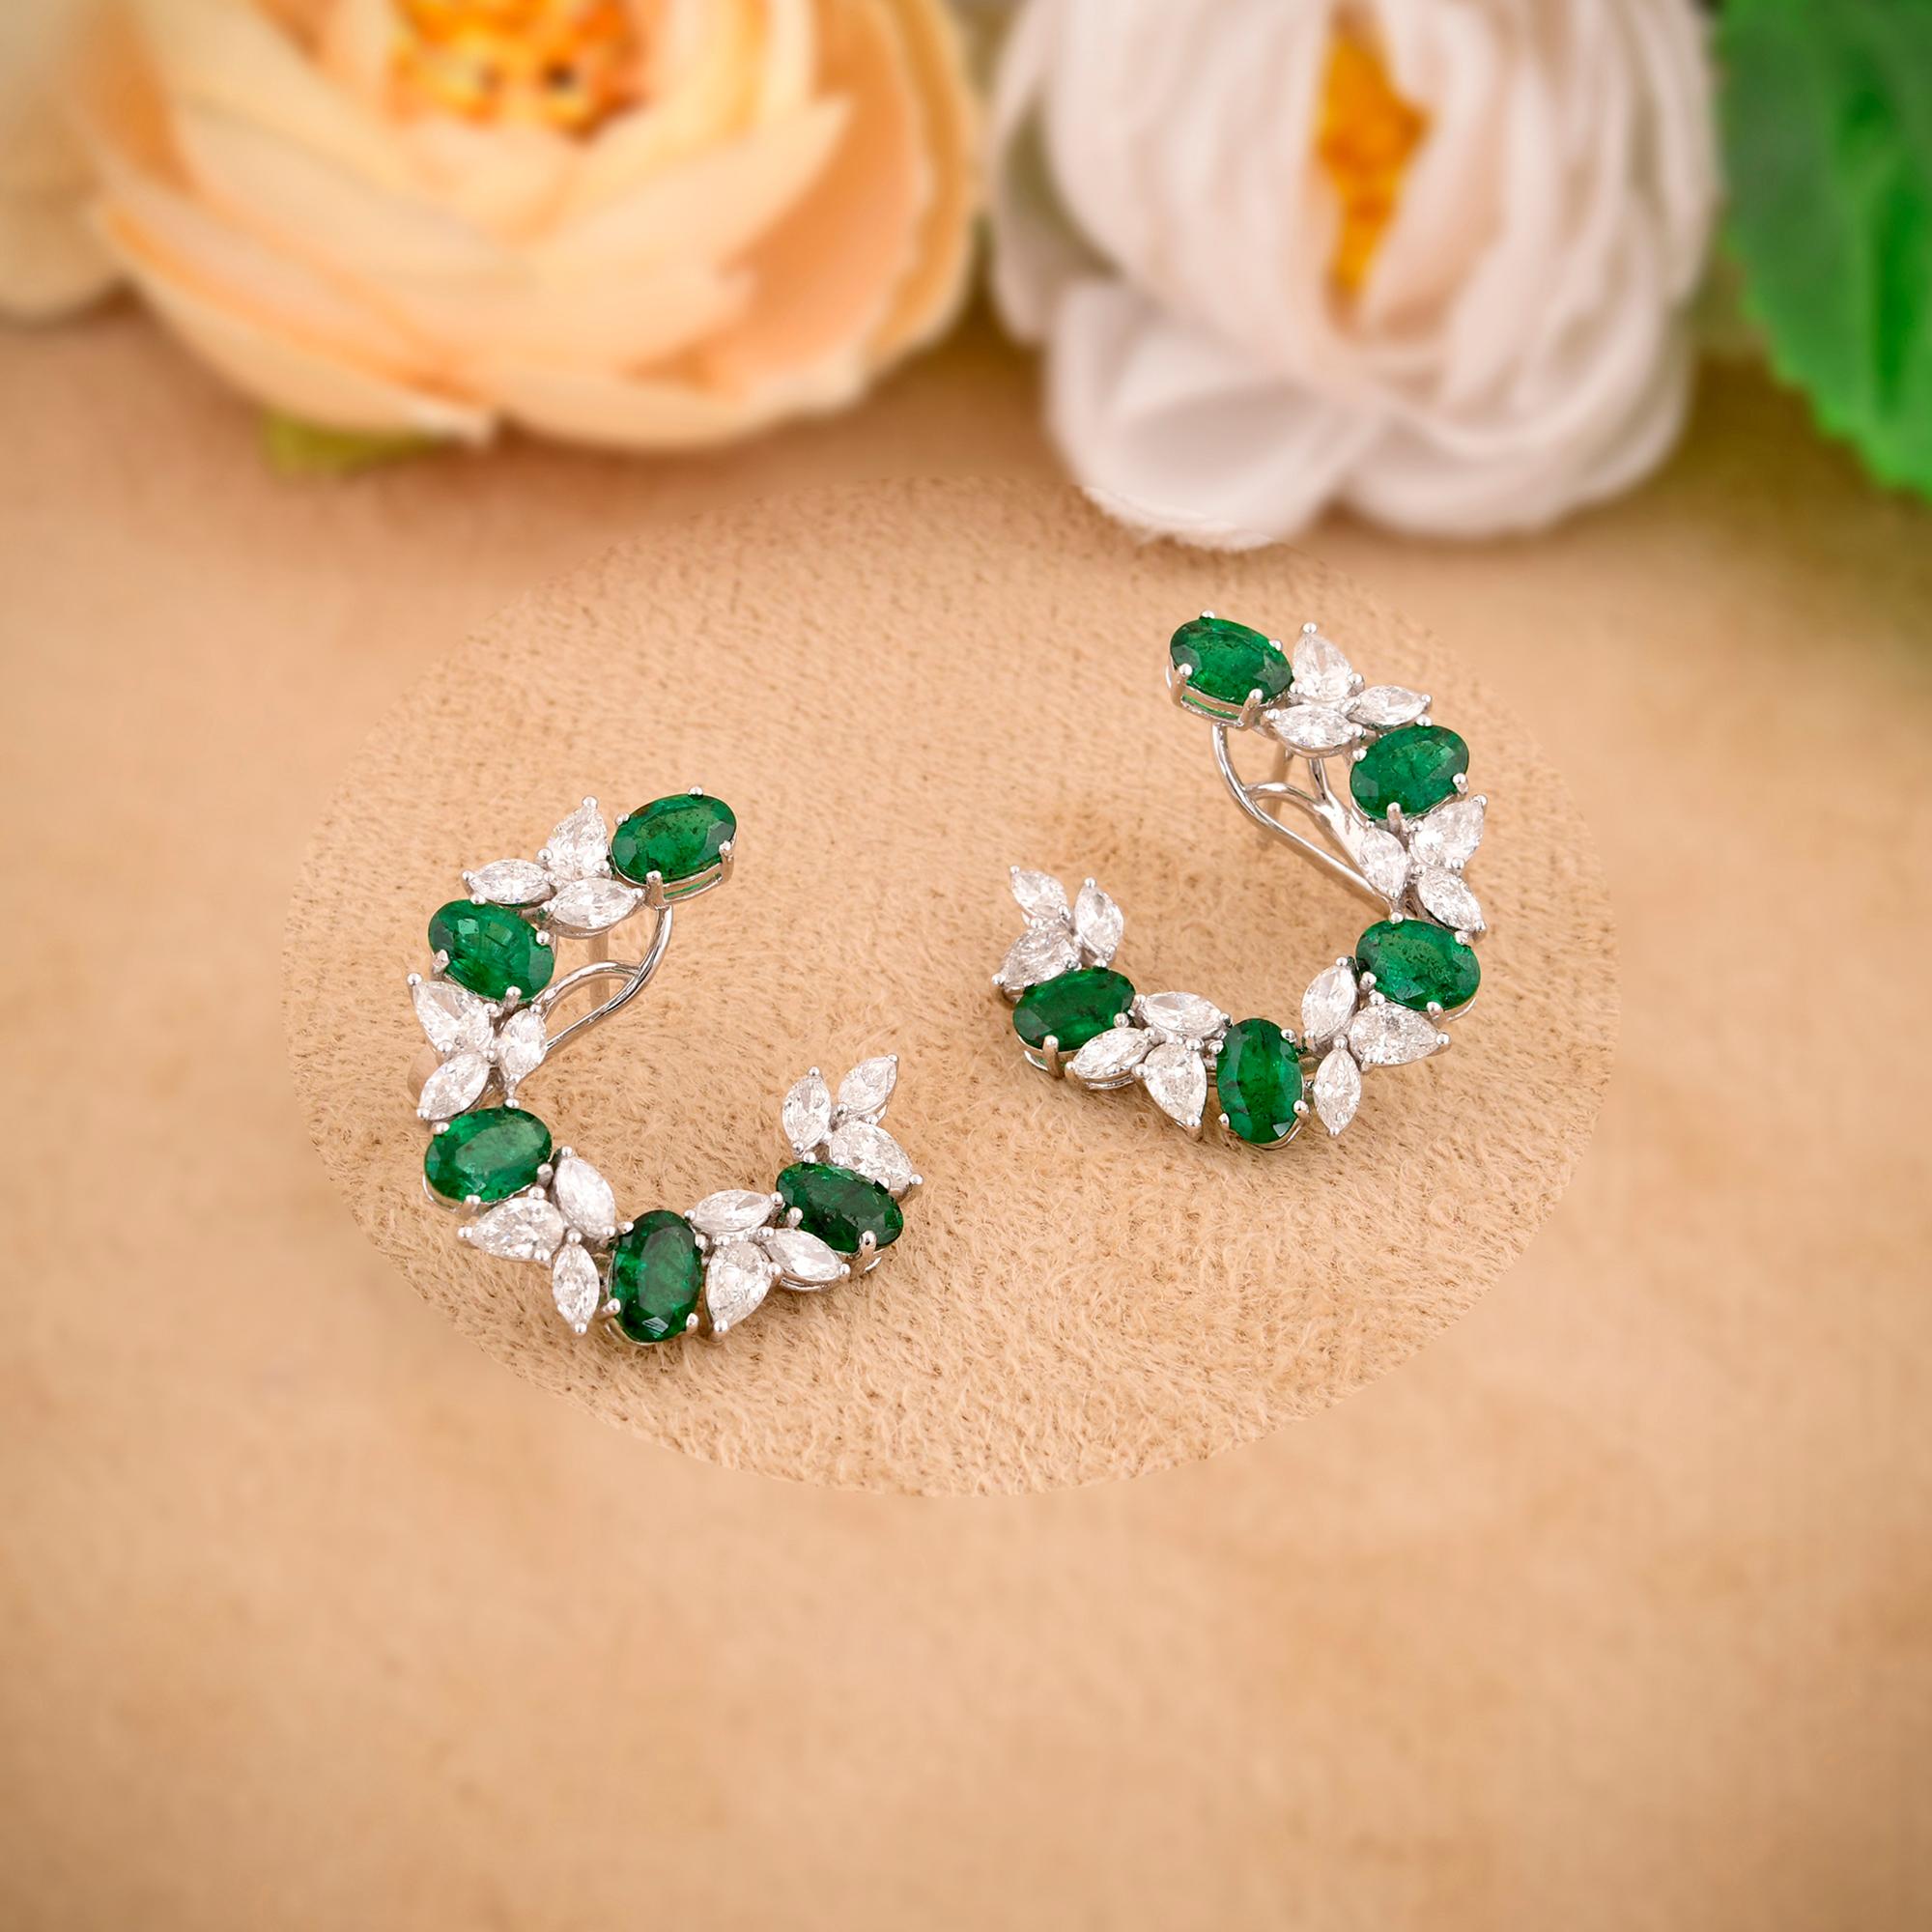 Oval Cut Oval Shape Zambian Emerald Gemstone Hoop Earrings Diamond 18 Karat White Gold For Sale